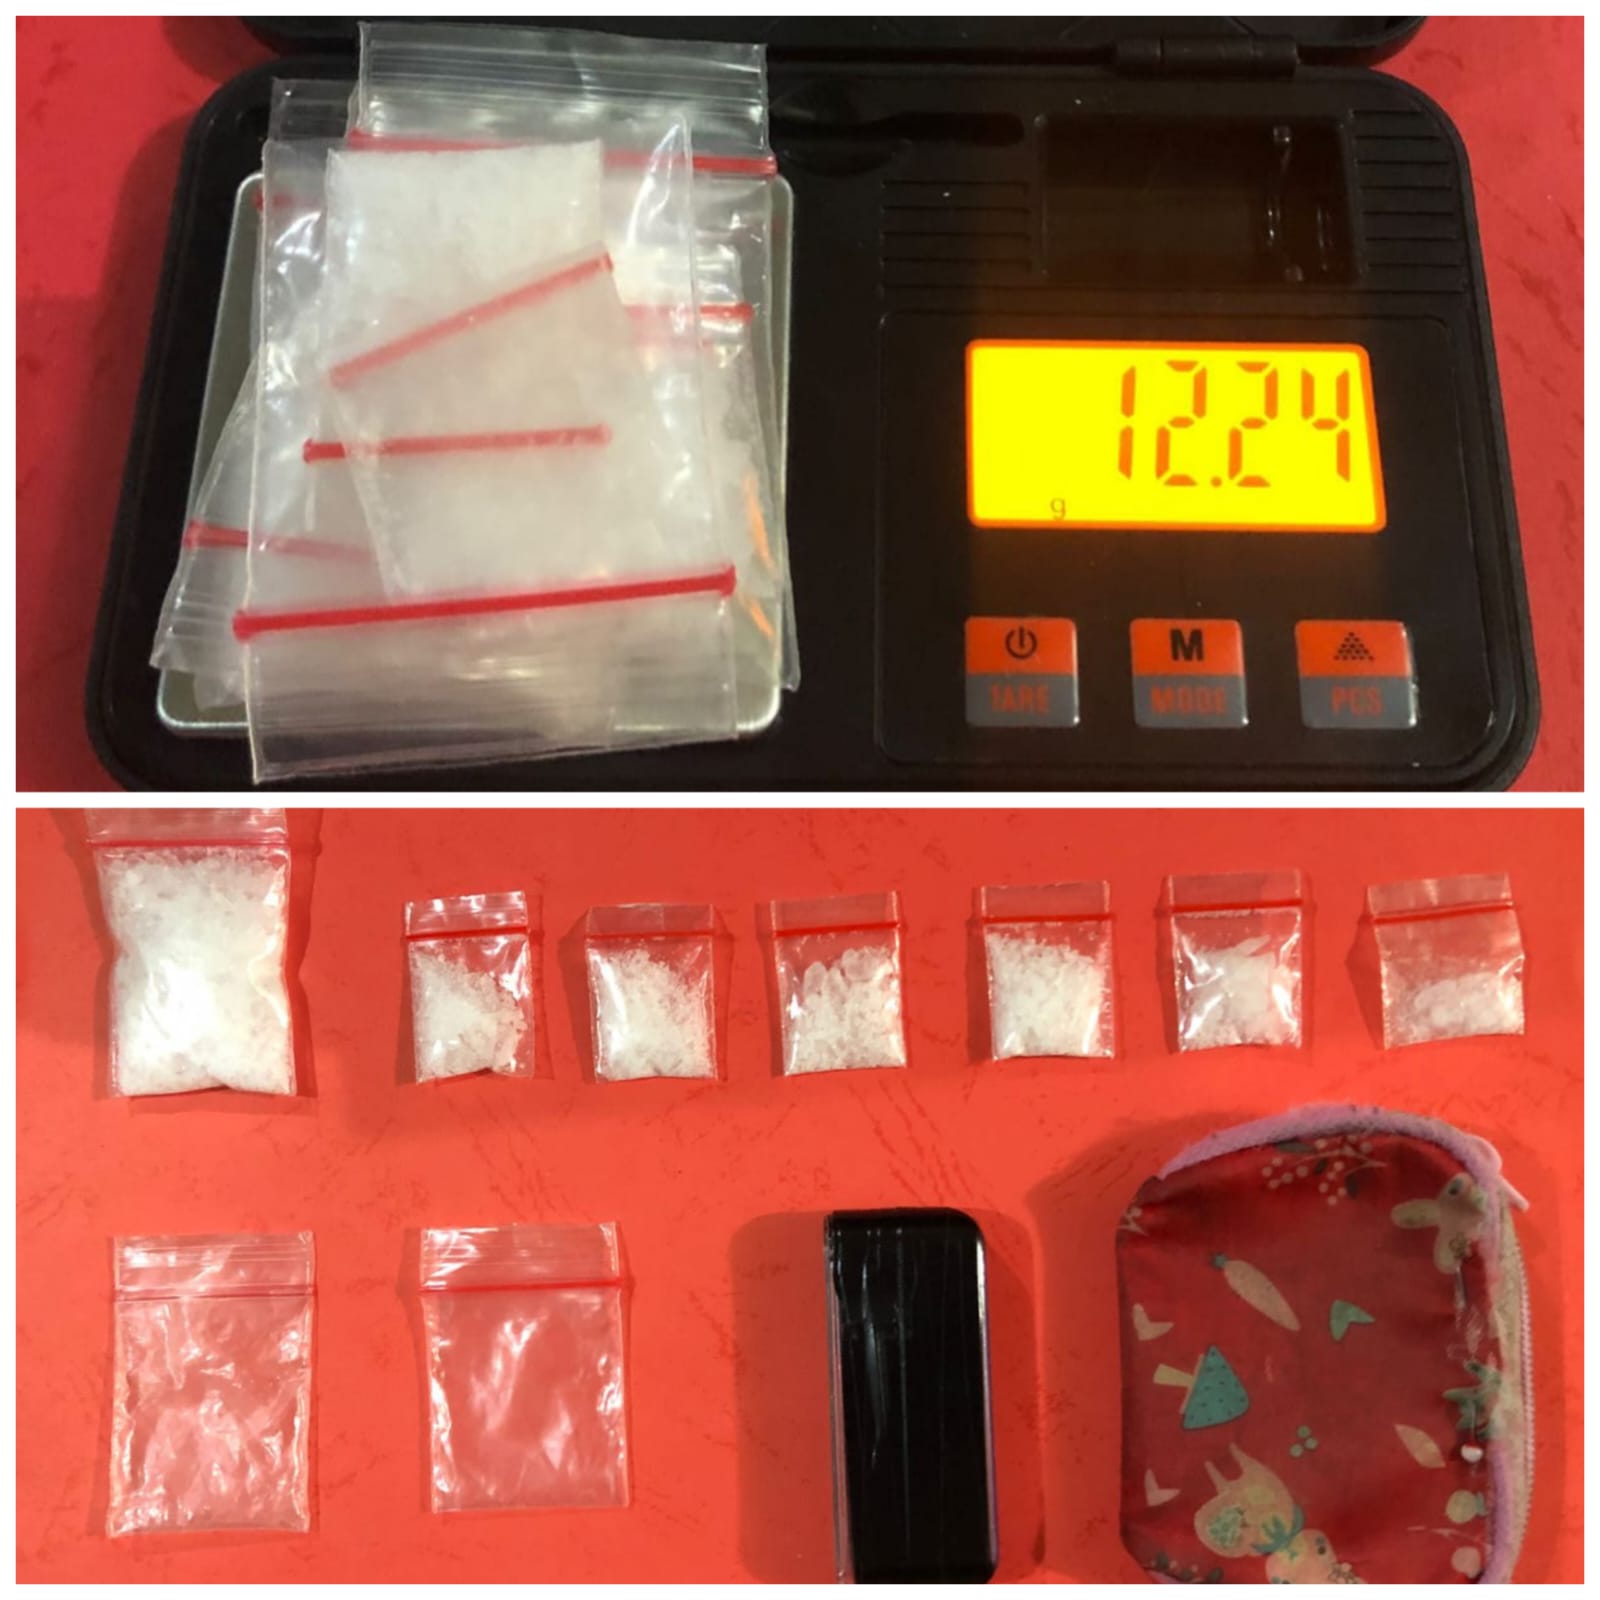 Pengedar Sabu Diringkus, Polisi Amankan 12,24 gram Siap Edar